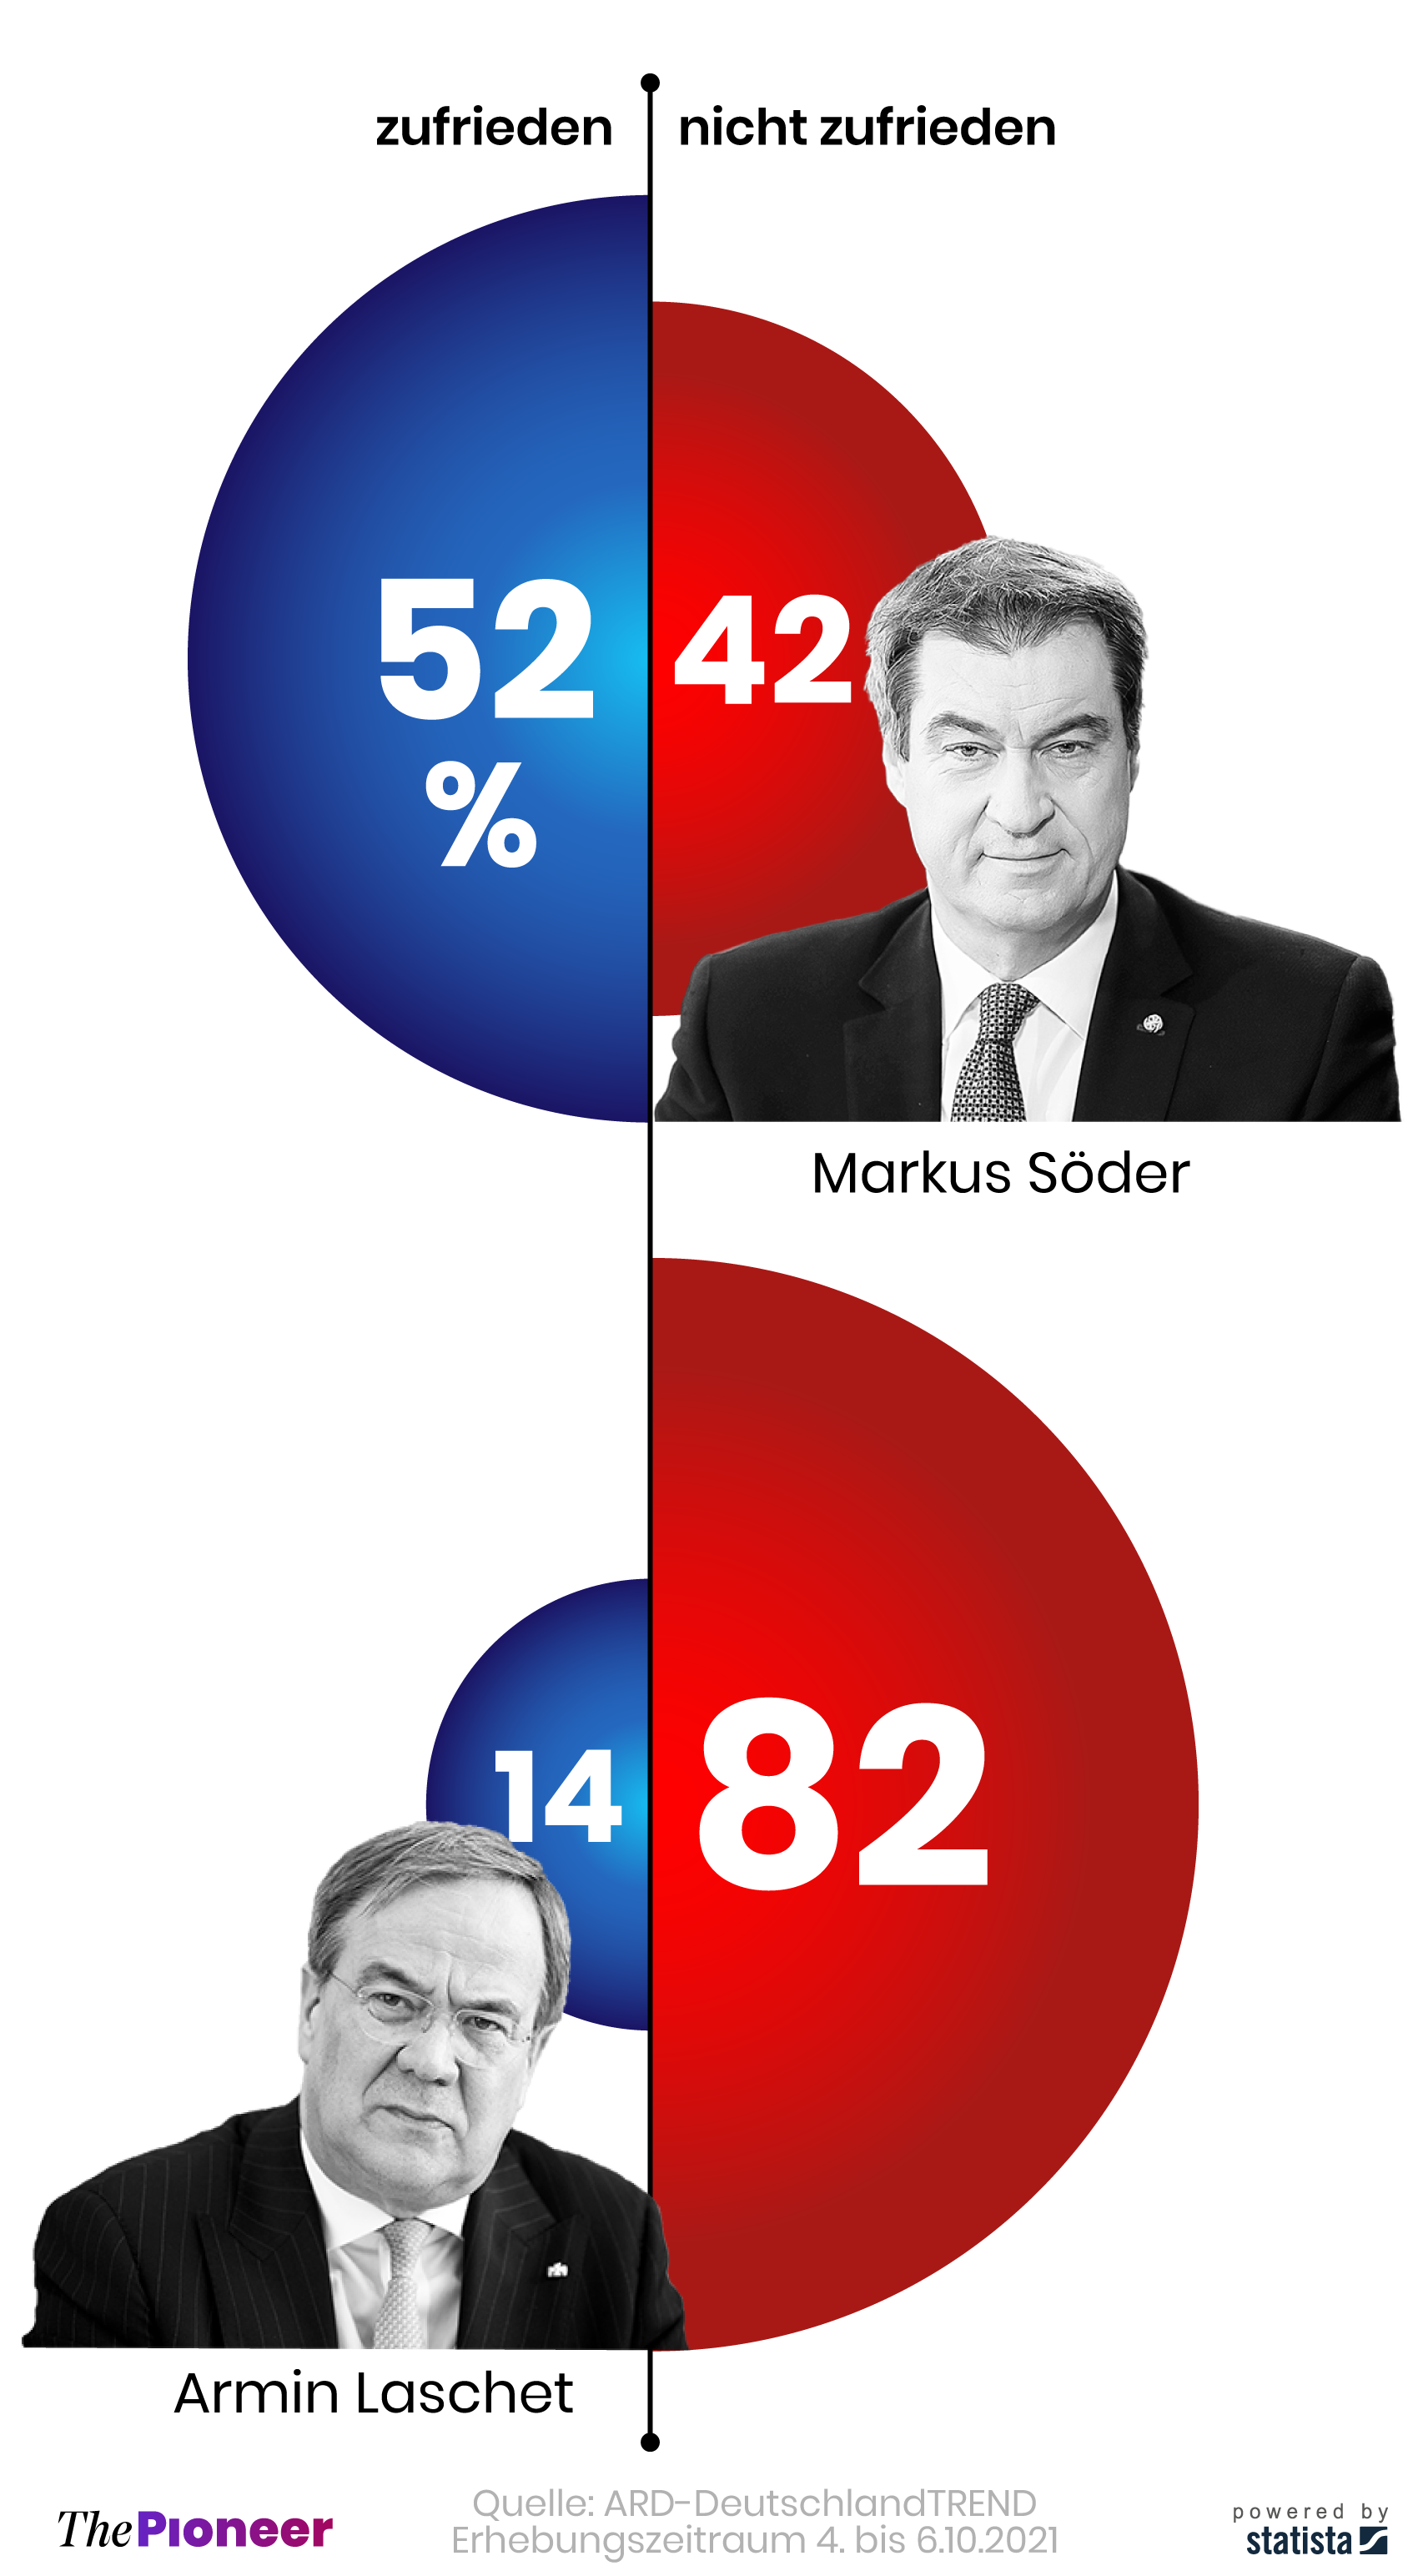 Antworten auf die Frage: „Wie zufrieden sind Sie mit der politischen Arbeit von Markus Söder und Armin Laschet?“, in Prozent